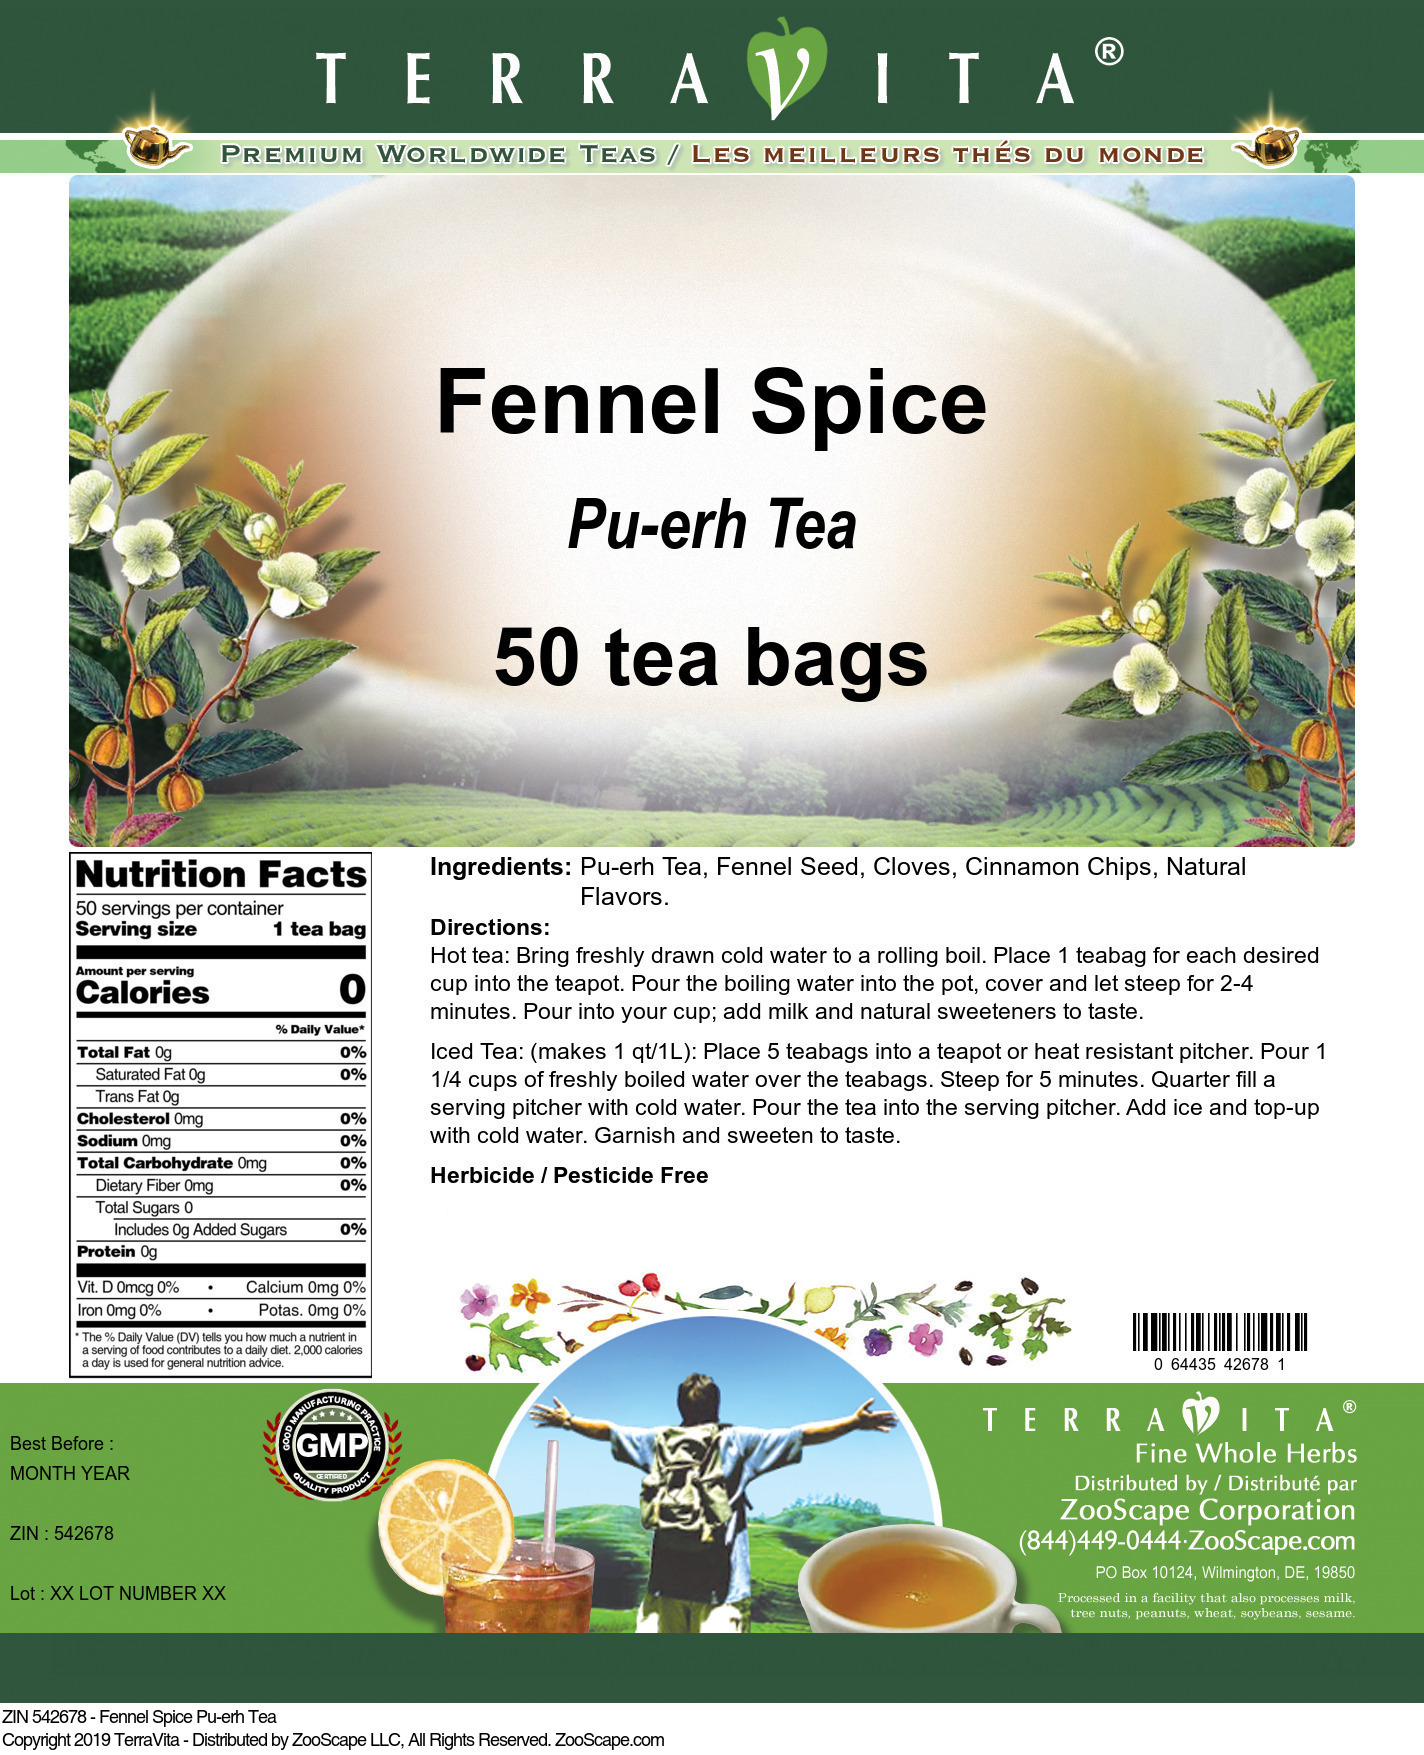 Fennel Spice Pu-erh Tea - Label